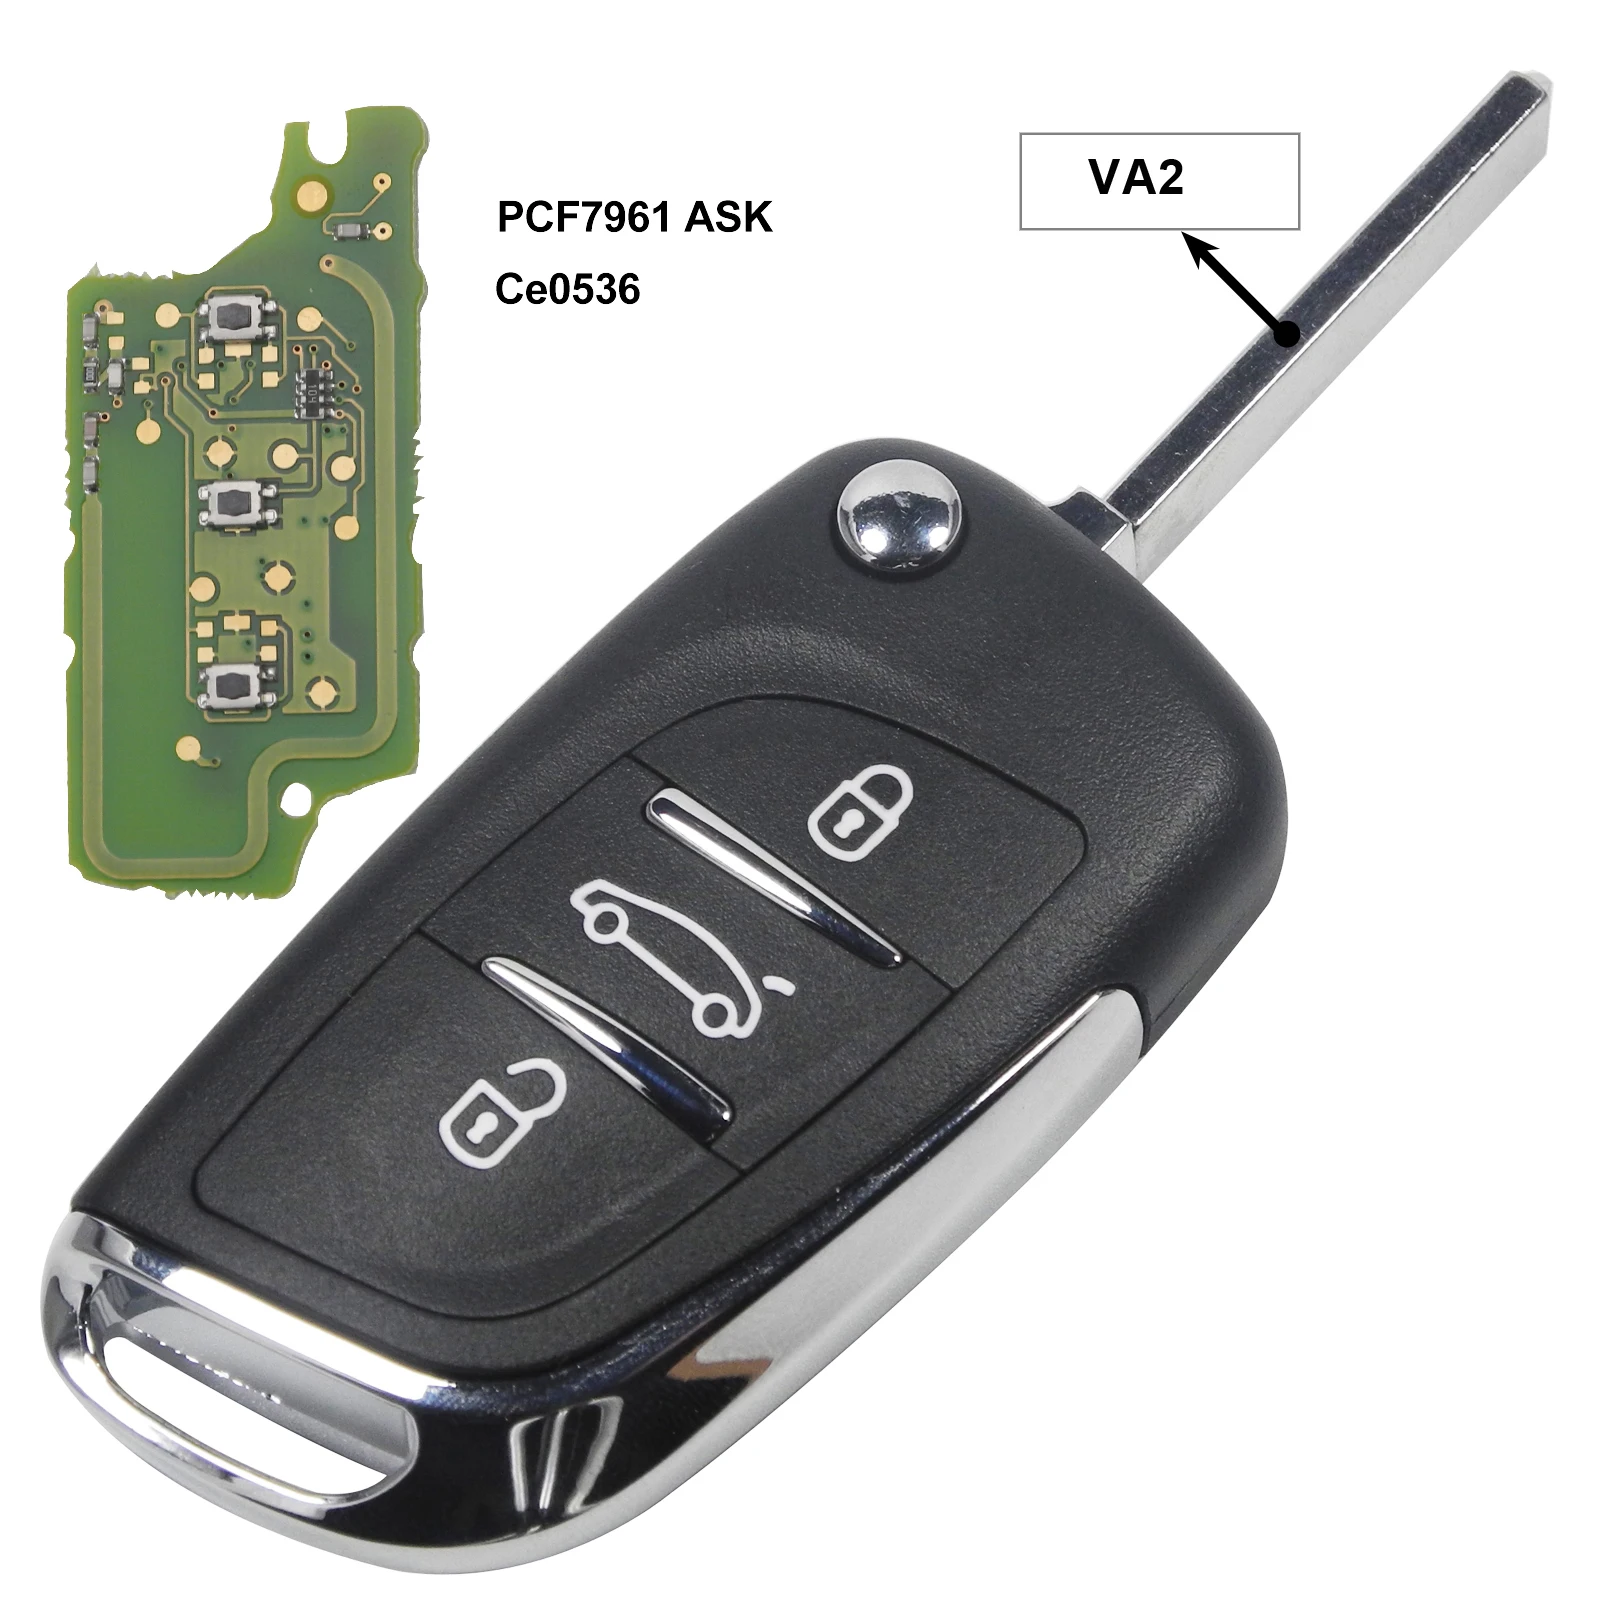 Bilchave 2/3 кнопки модифицированный складной пульт дистанционного управления автомобиля корпус ключа для Peugeot 307 408 308 3008 ASK/FSK 433 МГц HU83/VA2 лезвие CE0536 - Цвет: VA2 3BTN PCF7961